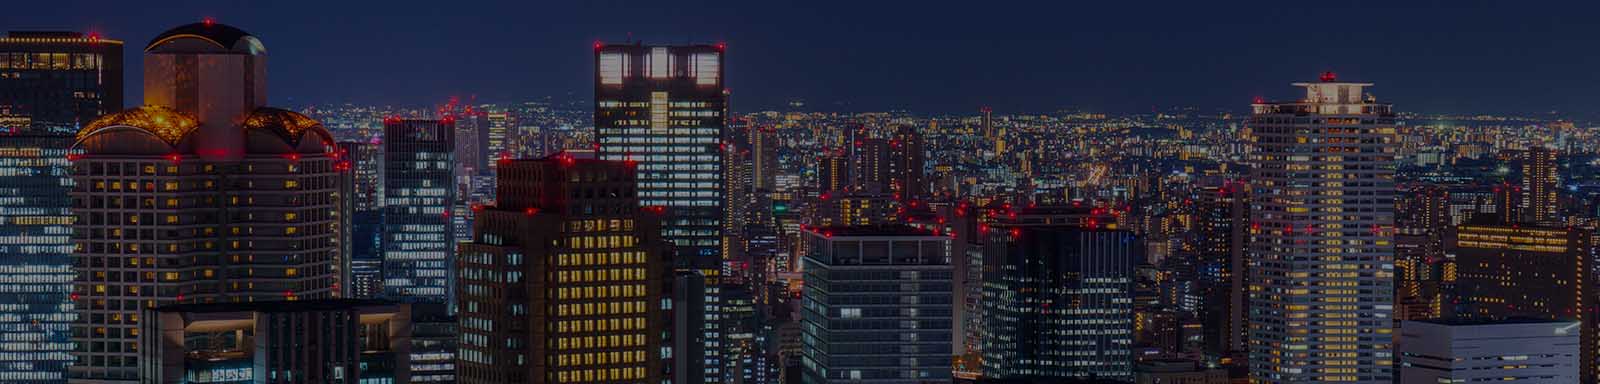 Building of Osaka